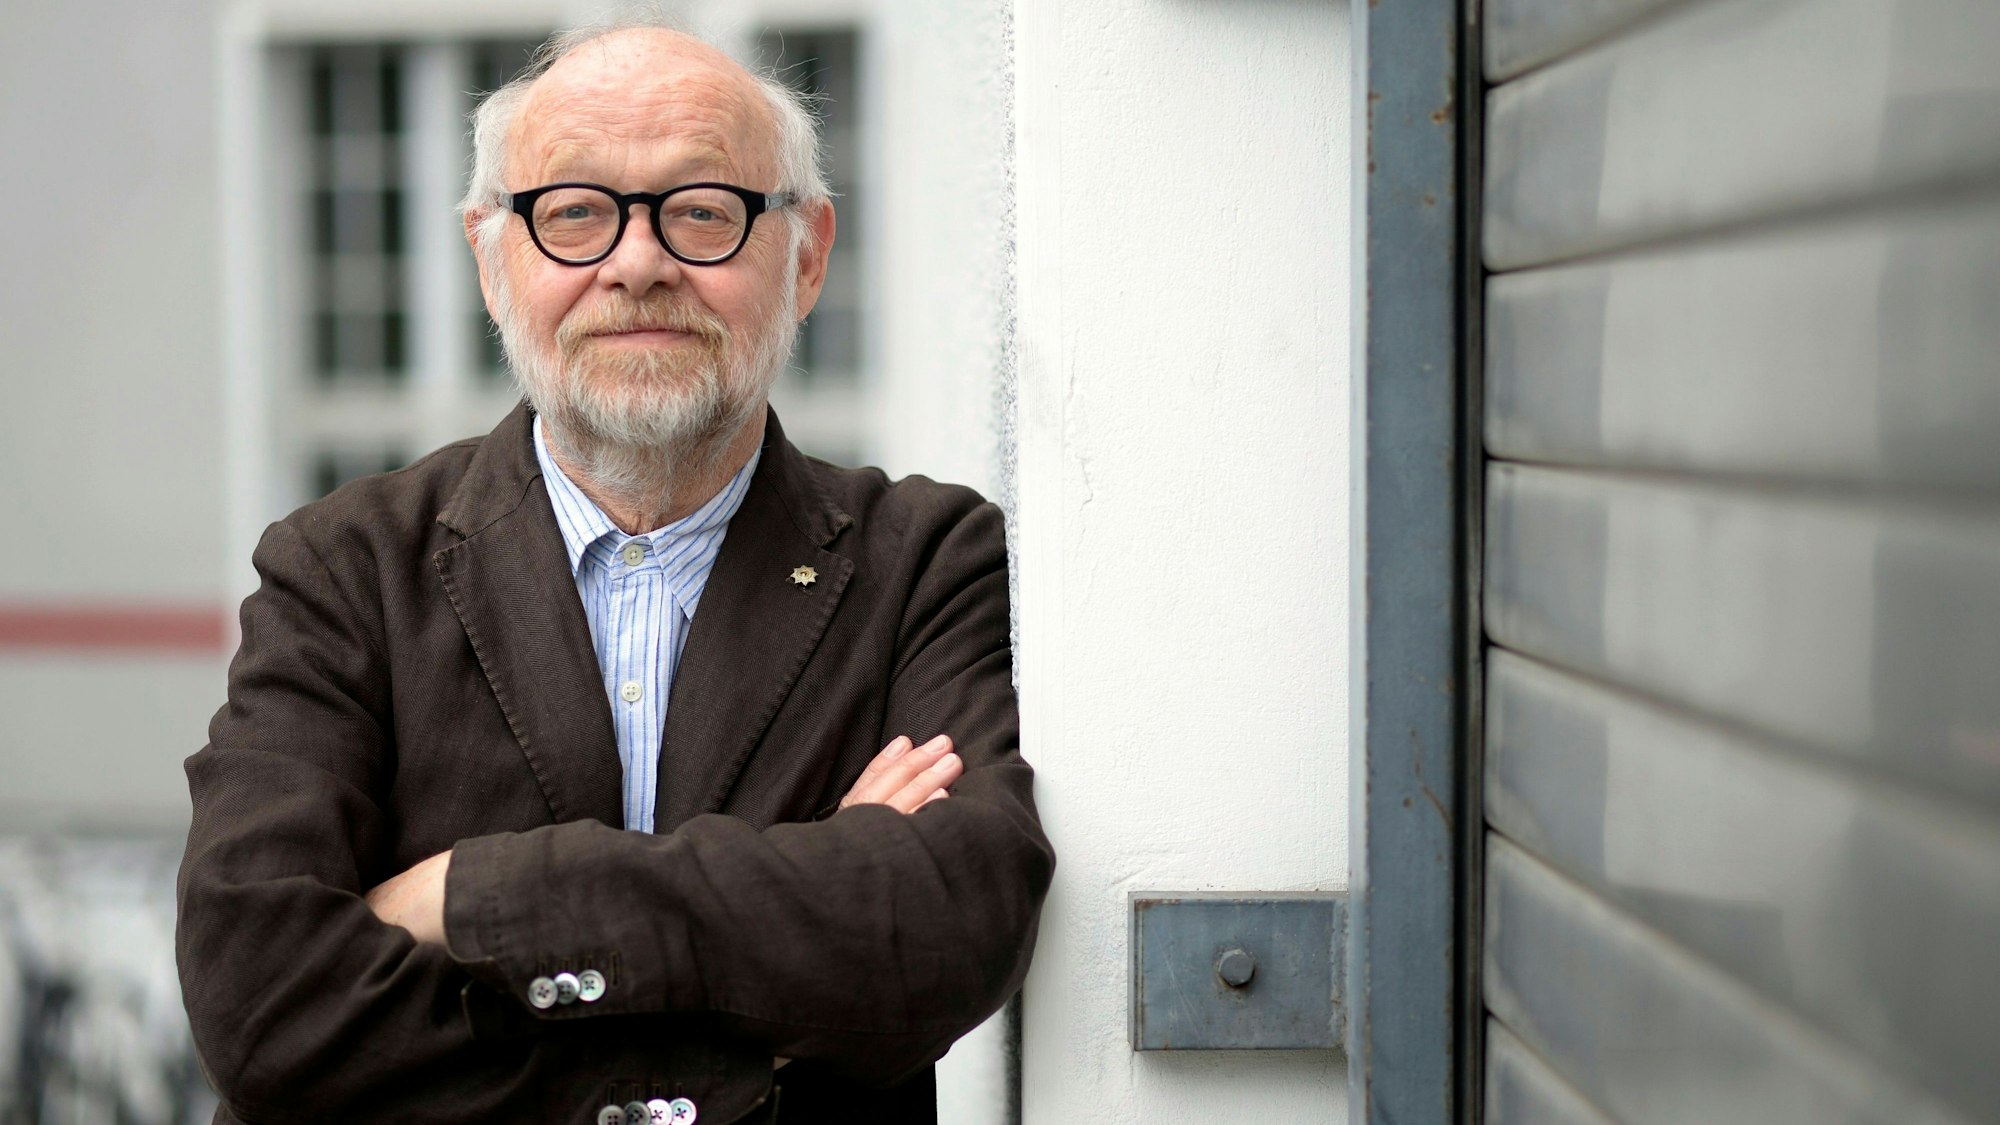 Jürgen Flimm, damaliger Intendant der Staatsoper Berlin, blickt nach einem Interview 2016 in die Kamera des Fotografen.